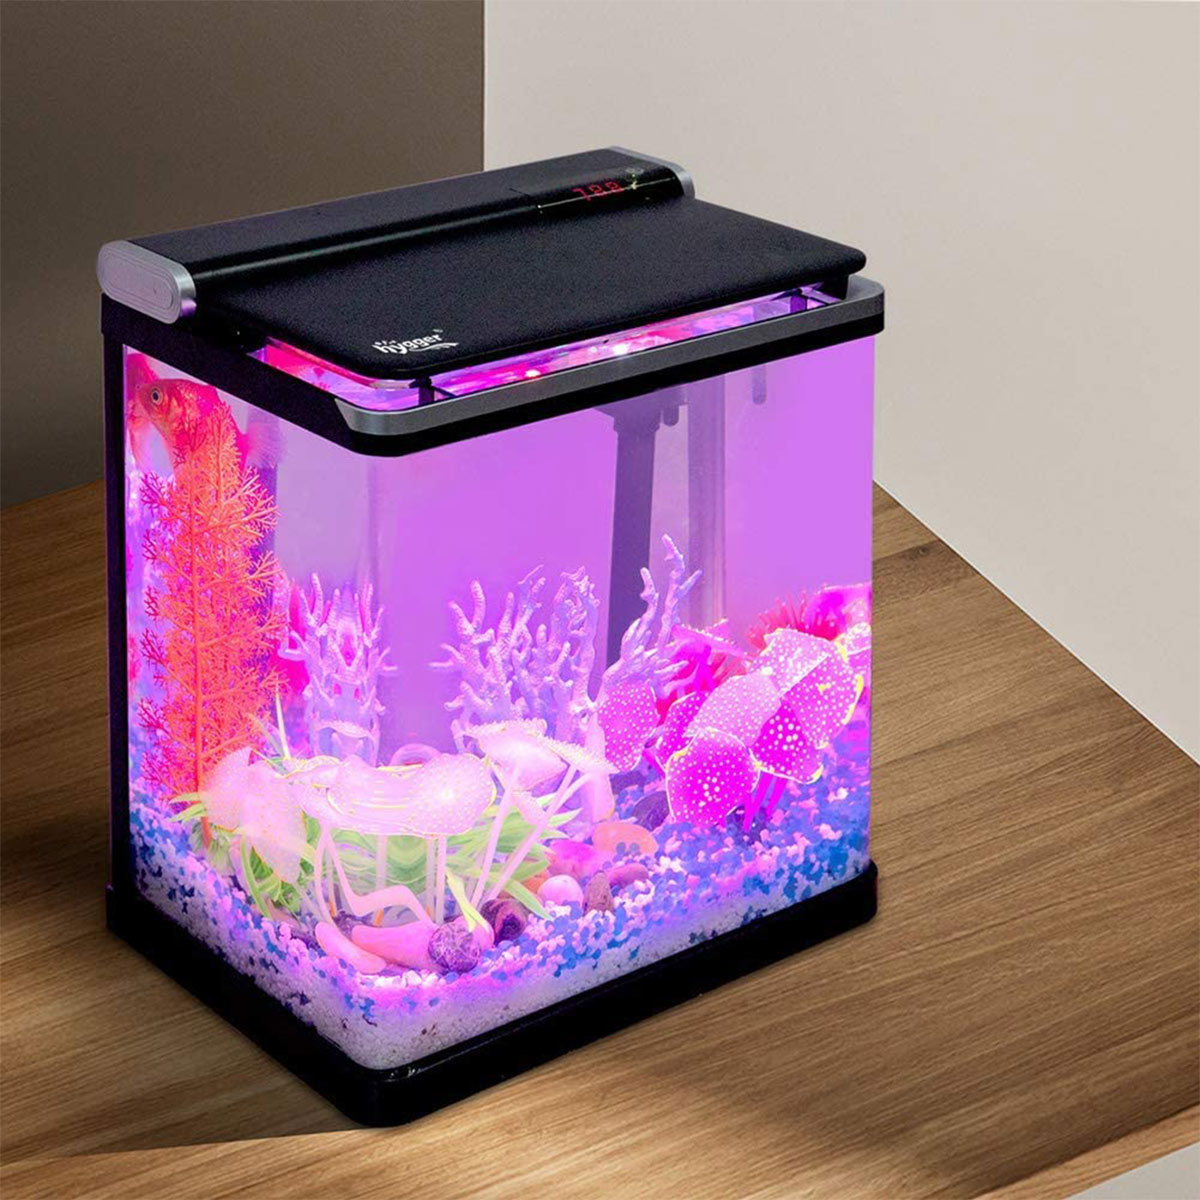 4 Gallon Small Fish Tank kits - Hygger